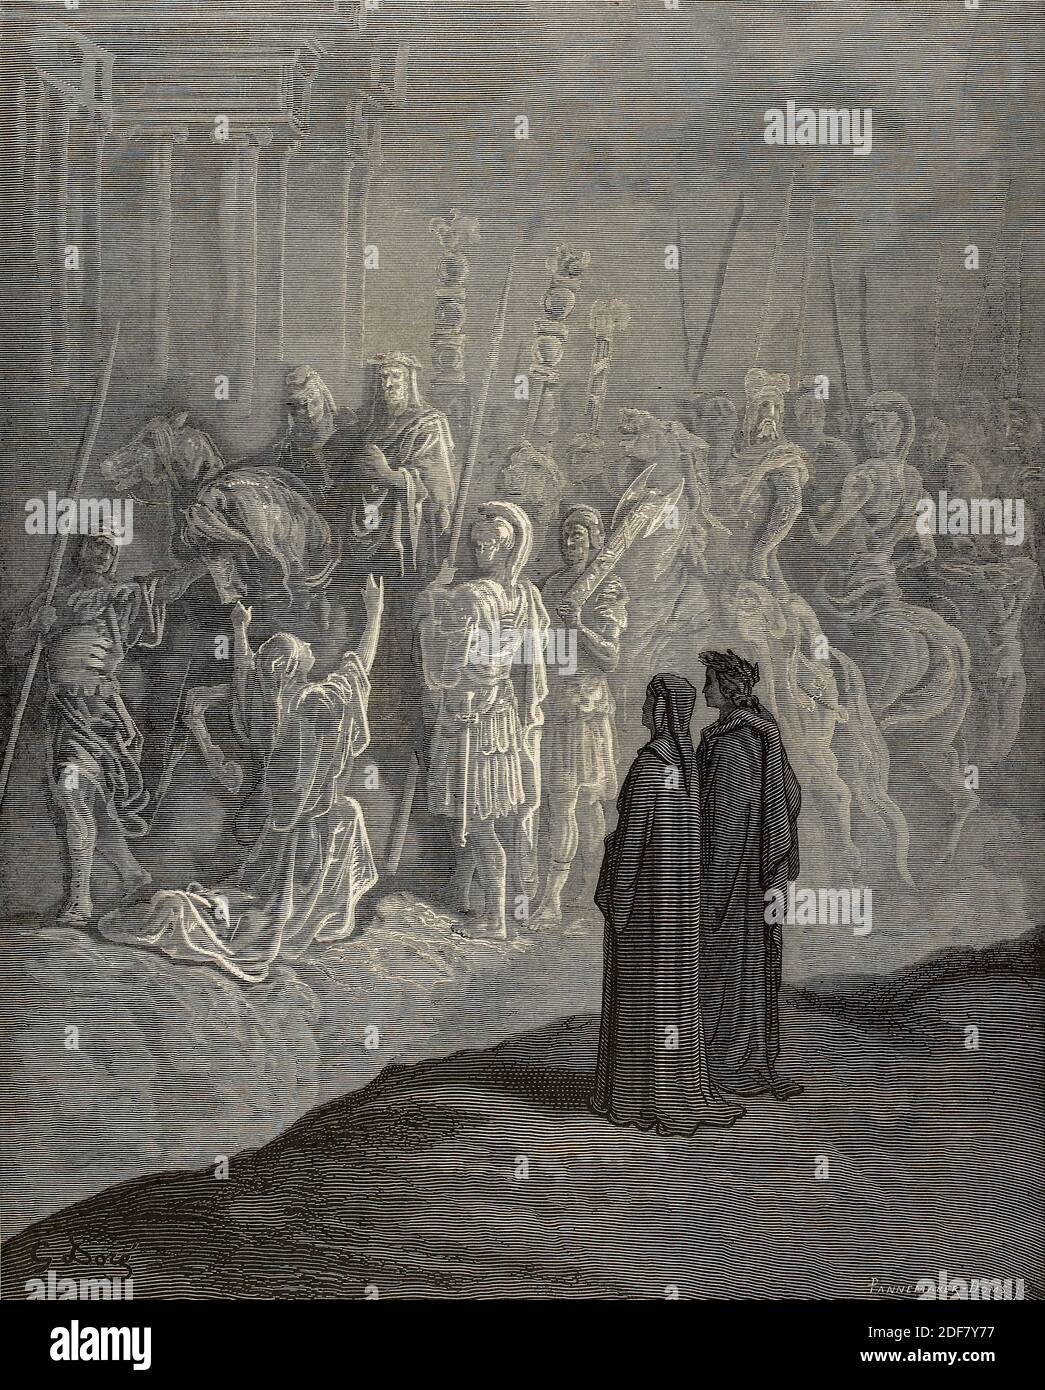 Dante - Divina Commedia - Purgatorio - Ilustración de Gustave Dorè - Canto X - ejemplo de humildad Foto de stock